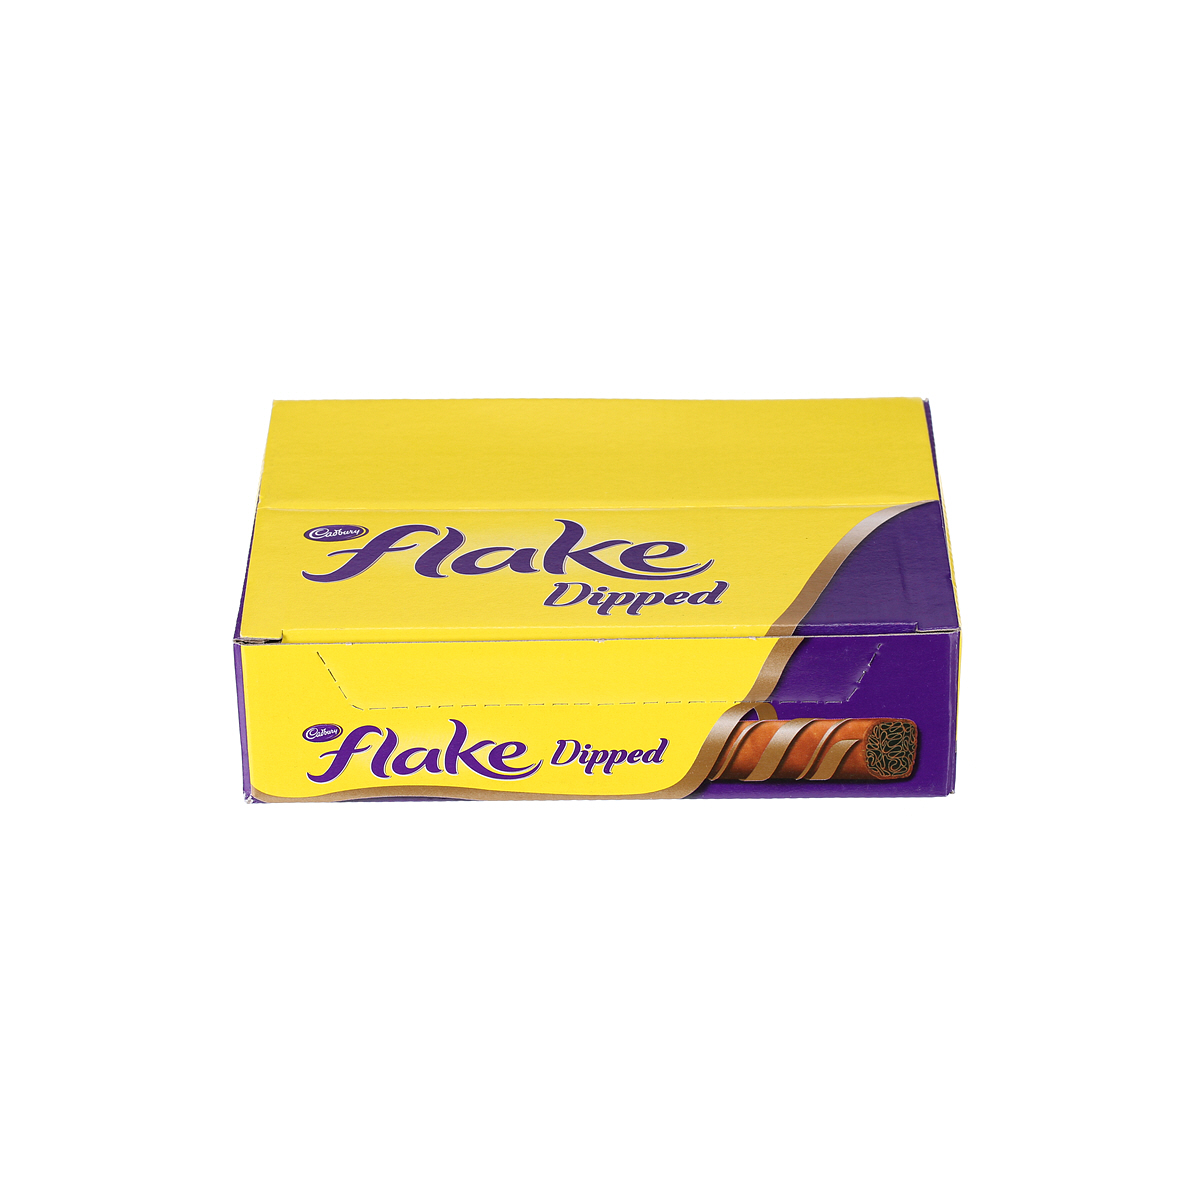 Cadbury Flake, 32g